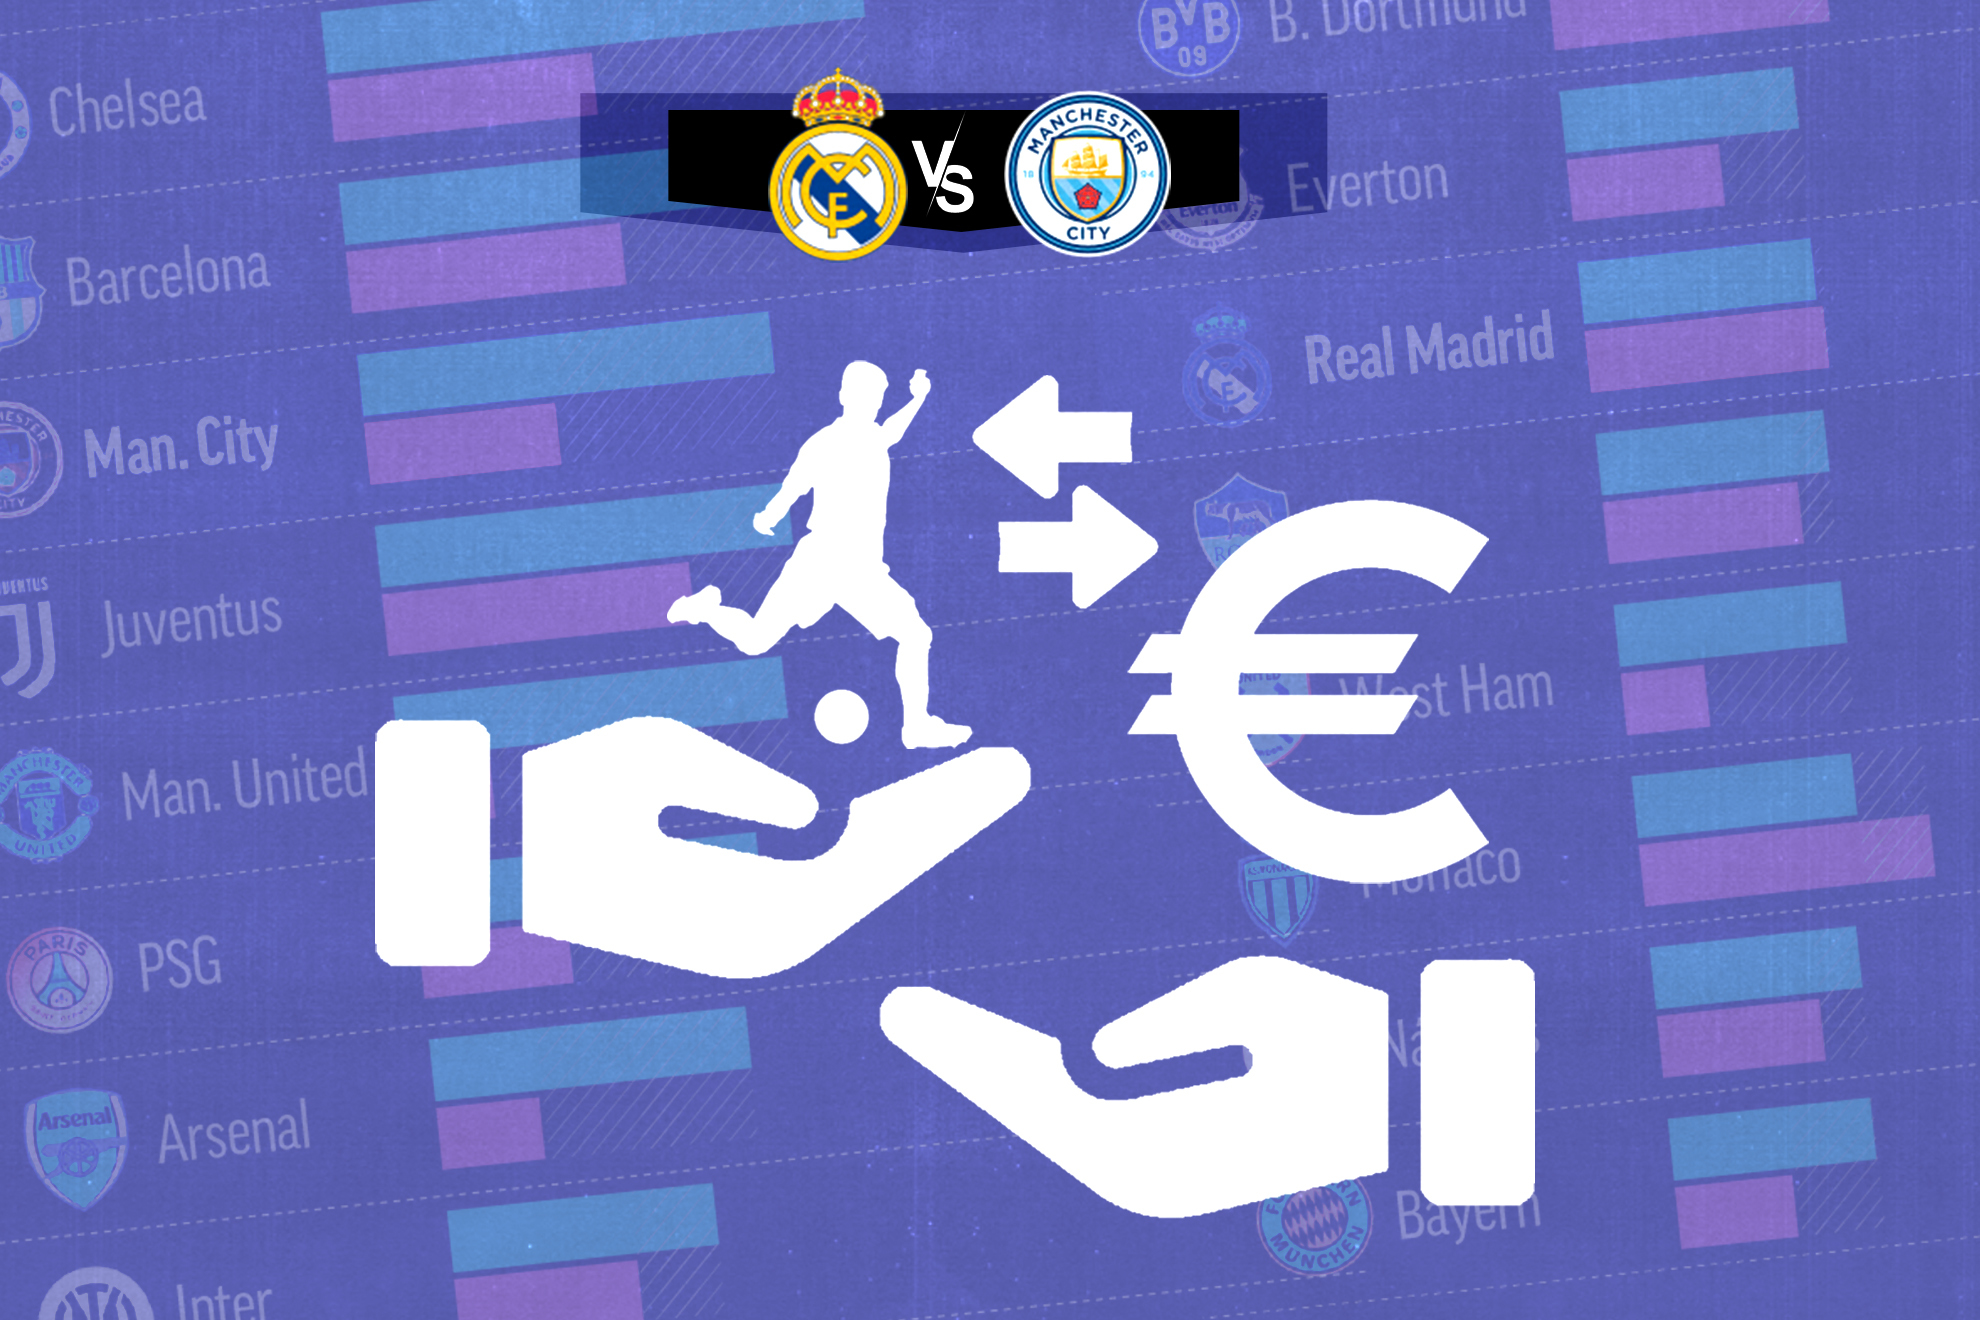 El balance de gastos e ingresos que retrata los modelos de club de Madrid y City